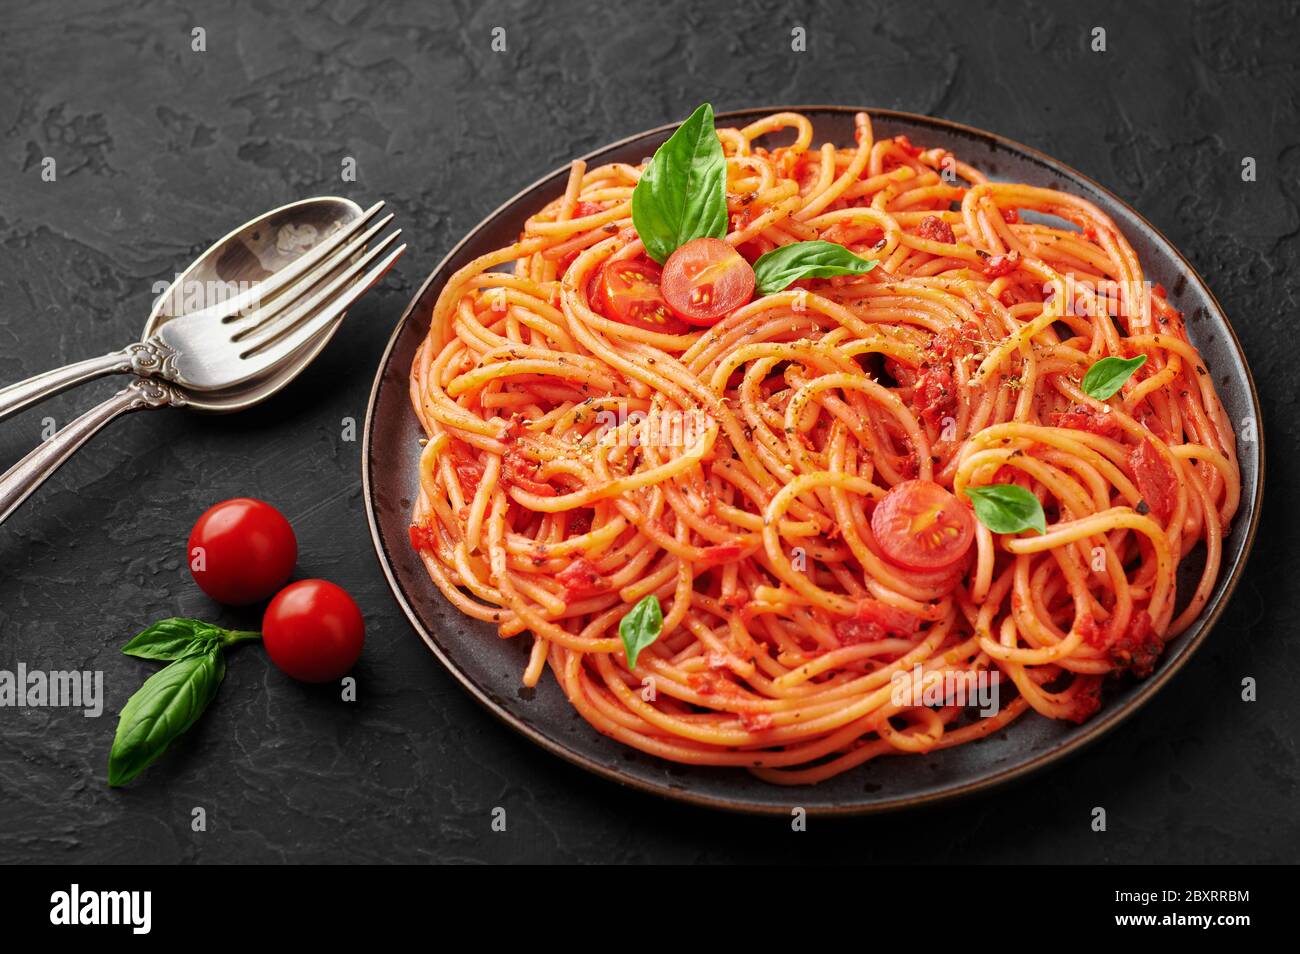 Spaghetti di pomodoro su piatto nero su sfondo di ardesia scuro. La pasta con salsa di pomodoro è un piatto classico della cucina italiana. Popolare cucina italiana Foto Stock